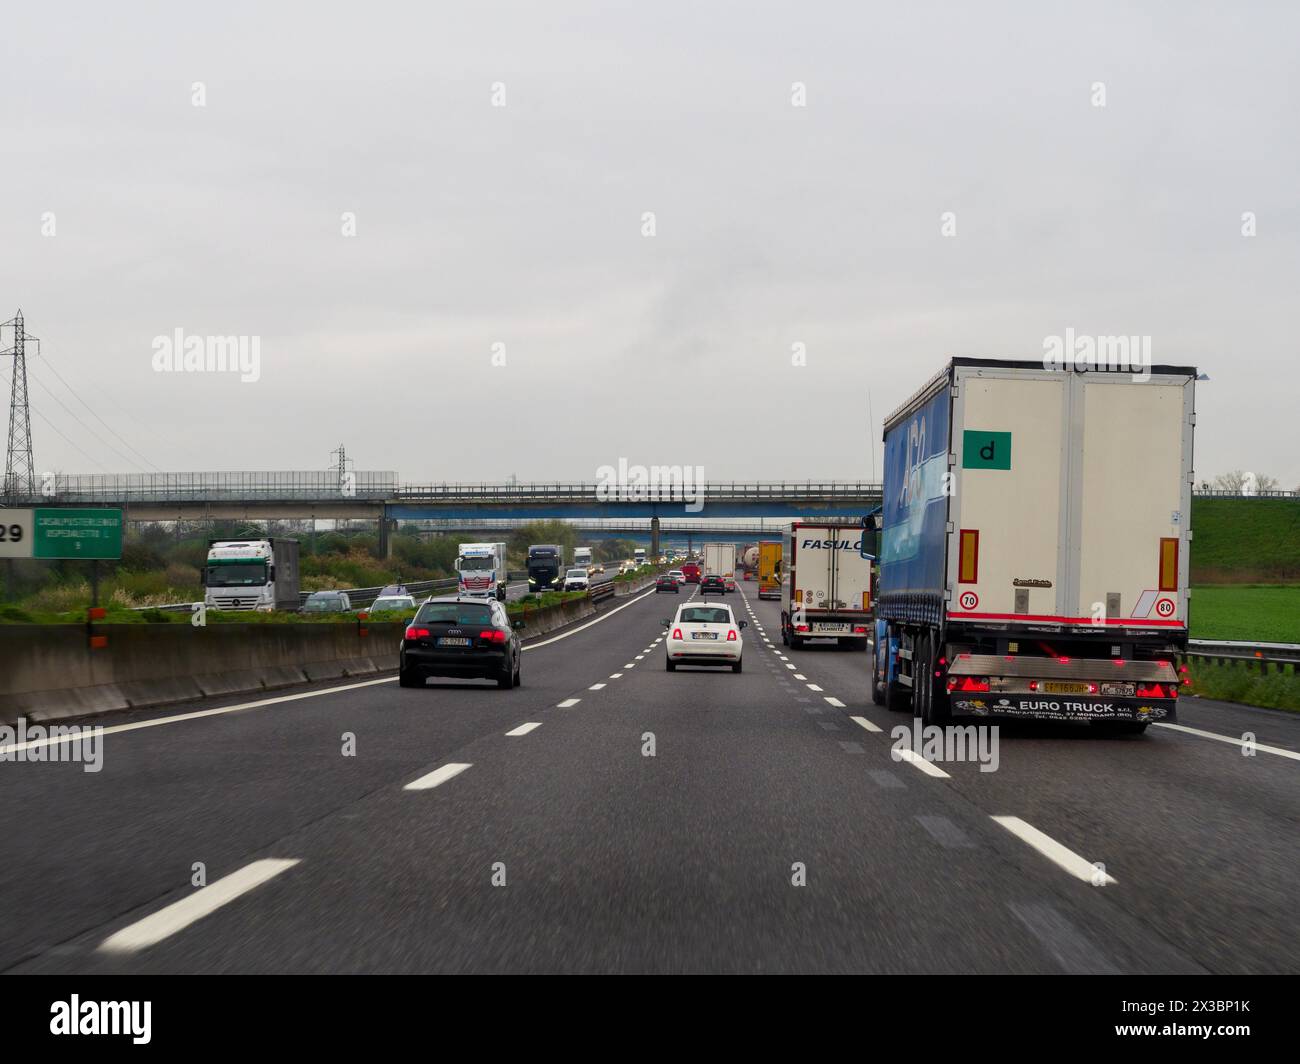 Vista di un'autostrada con più corsie di traffico e segnali stradali in una giornata nuvolosa, autostrada A1 A8 vicino a Milano, Italia, Europa Foto Stock